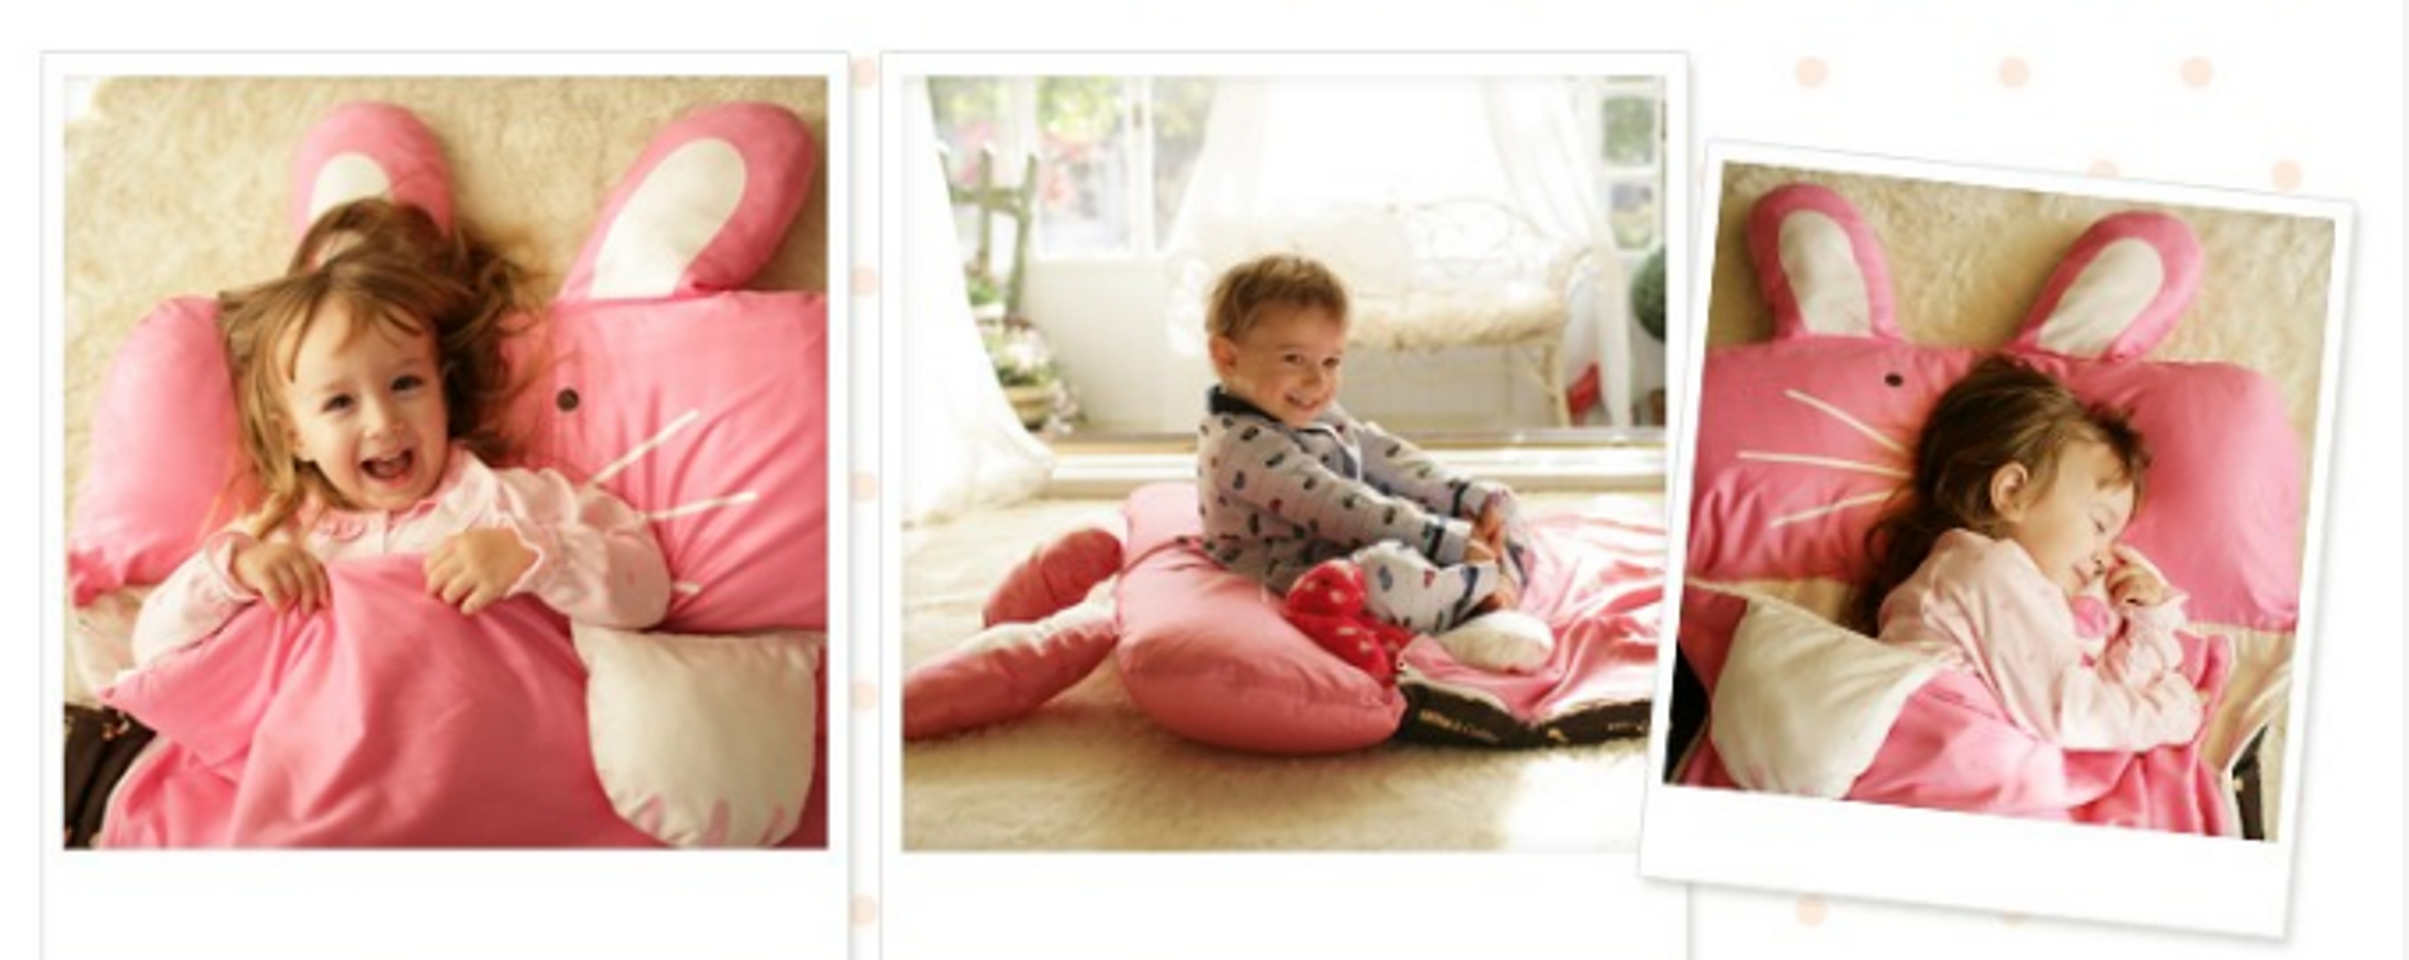 Túi ngủ thiết kế theo hình dáng các con vật ngộ nghĩnh và đáng yêu được rất nhiều bé ưu thích